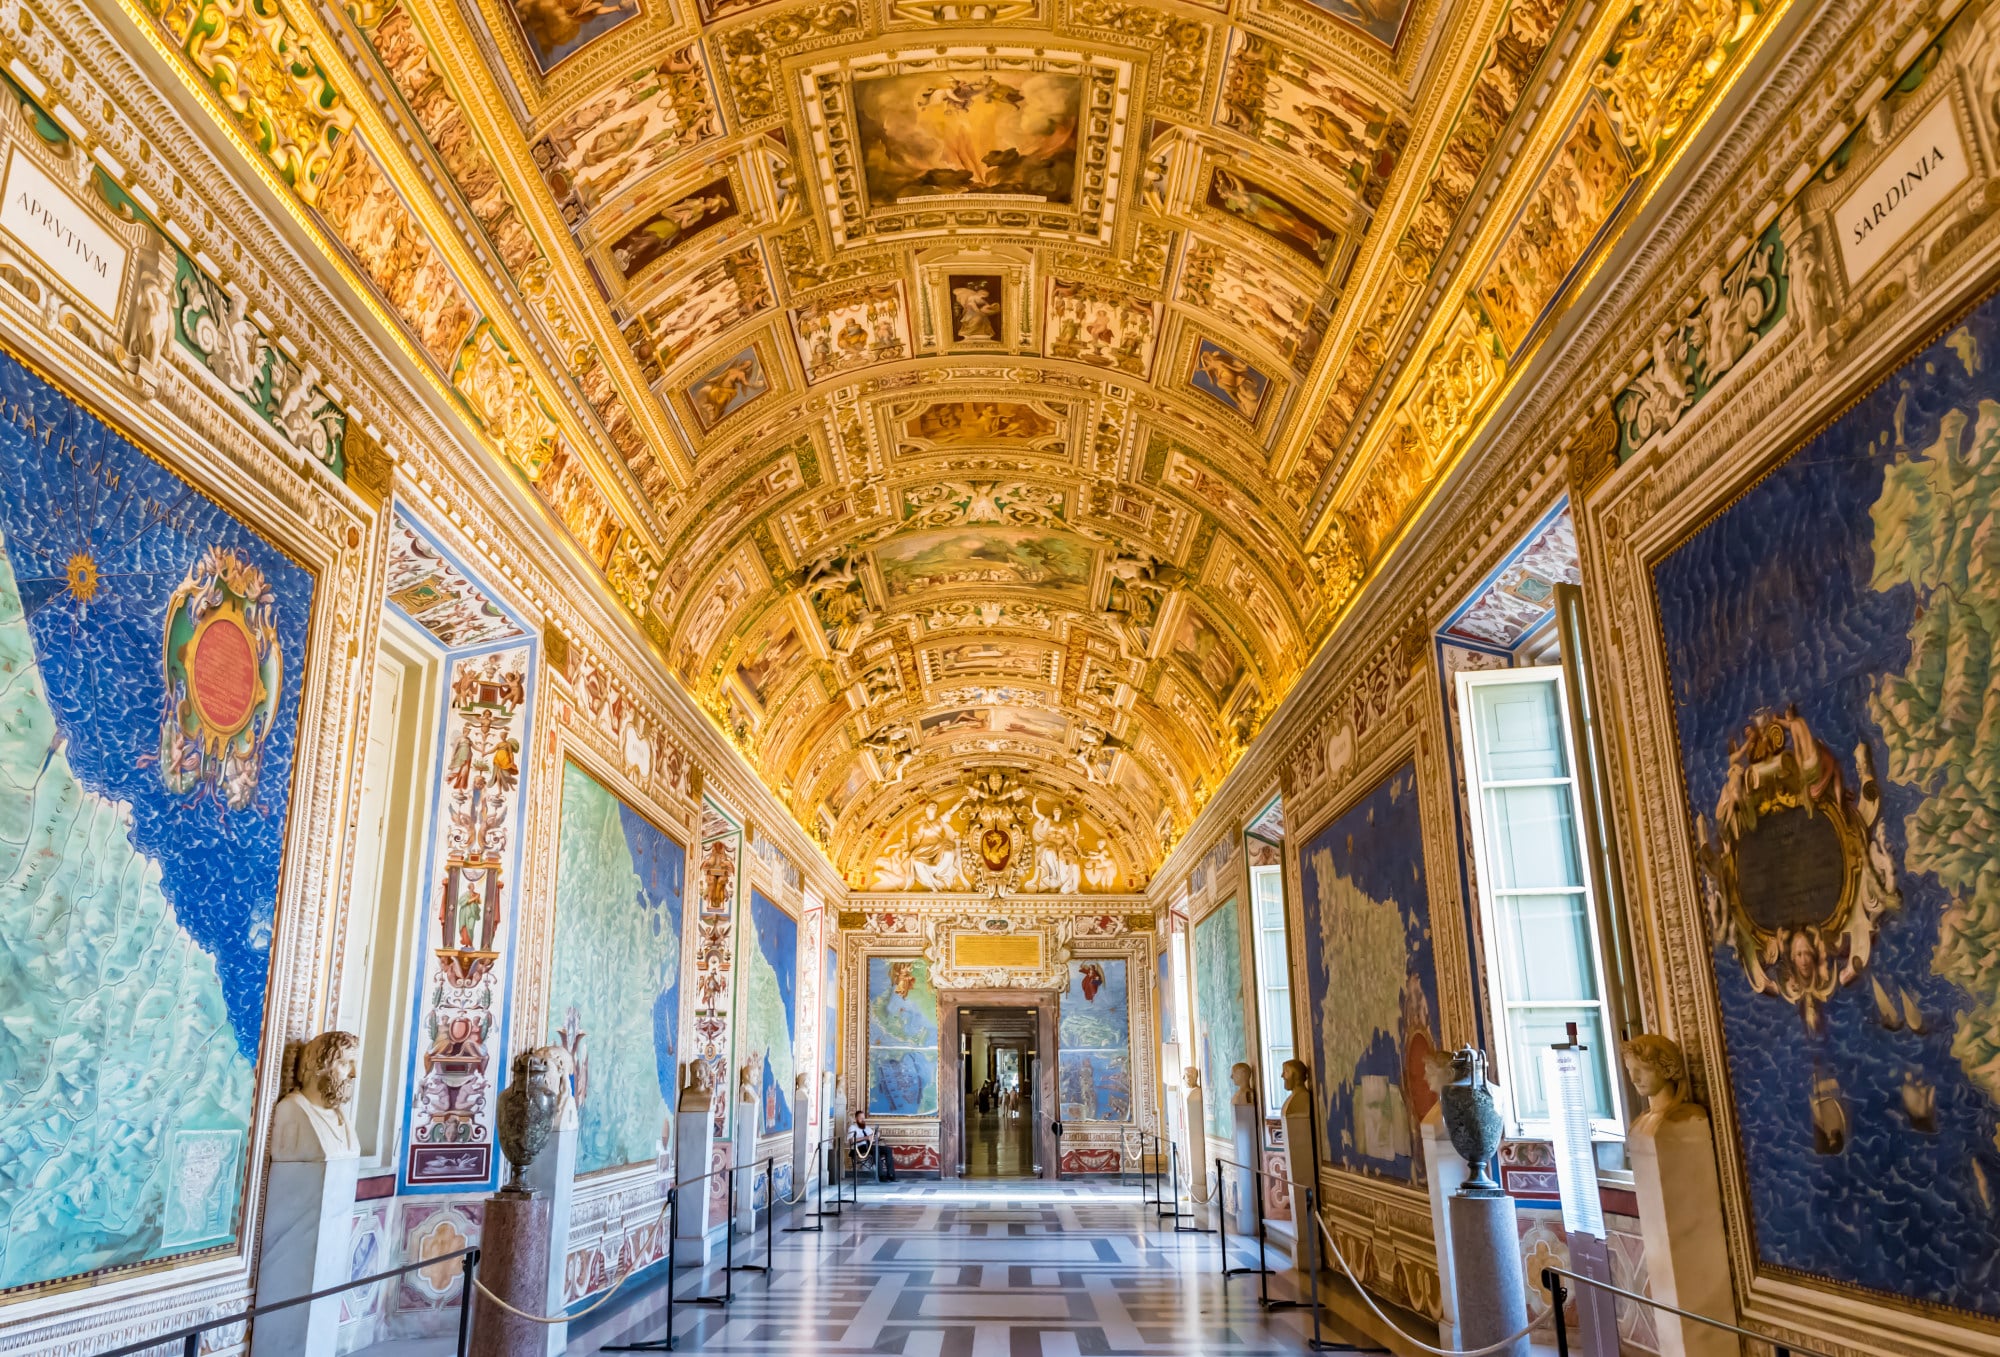 Vatikanische Museen - Galerie der Karten